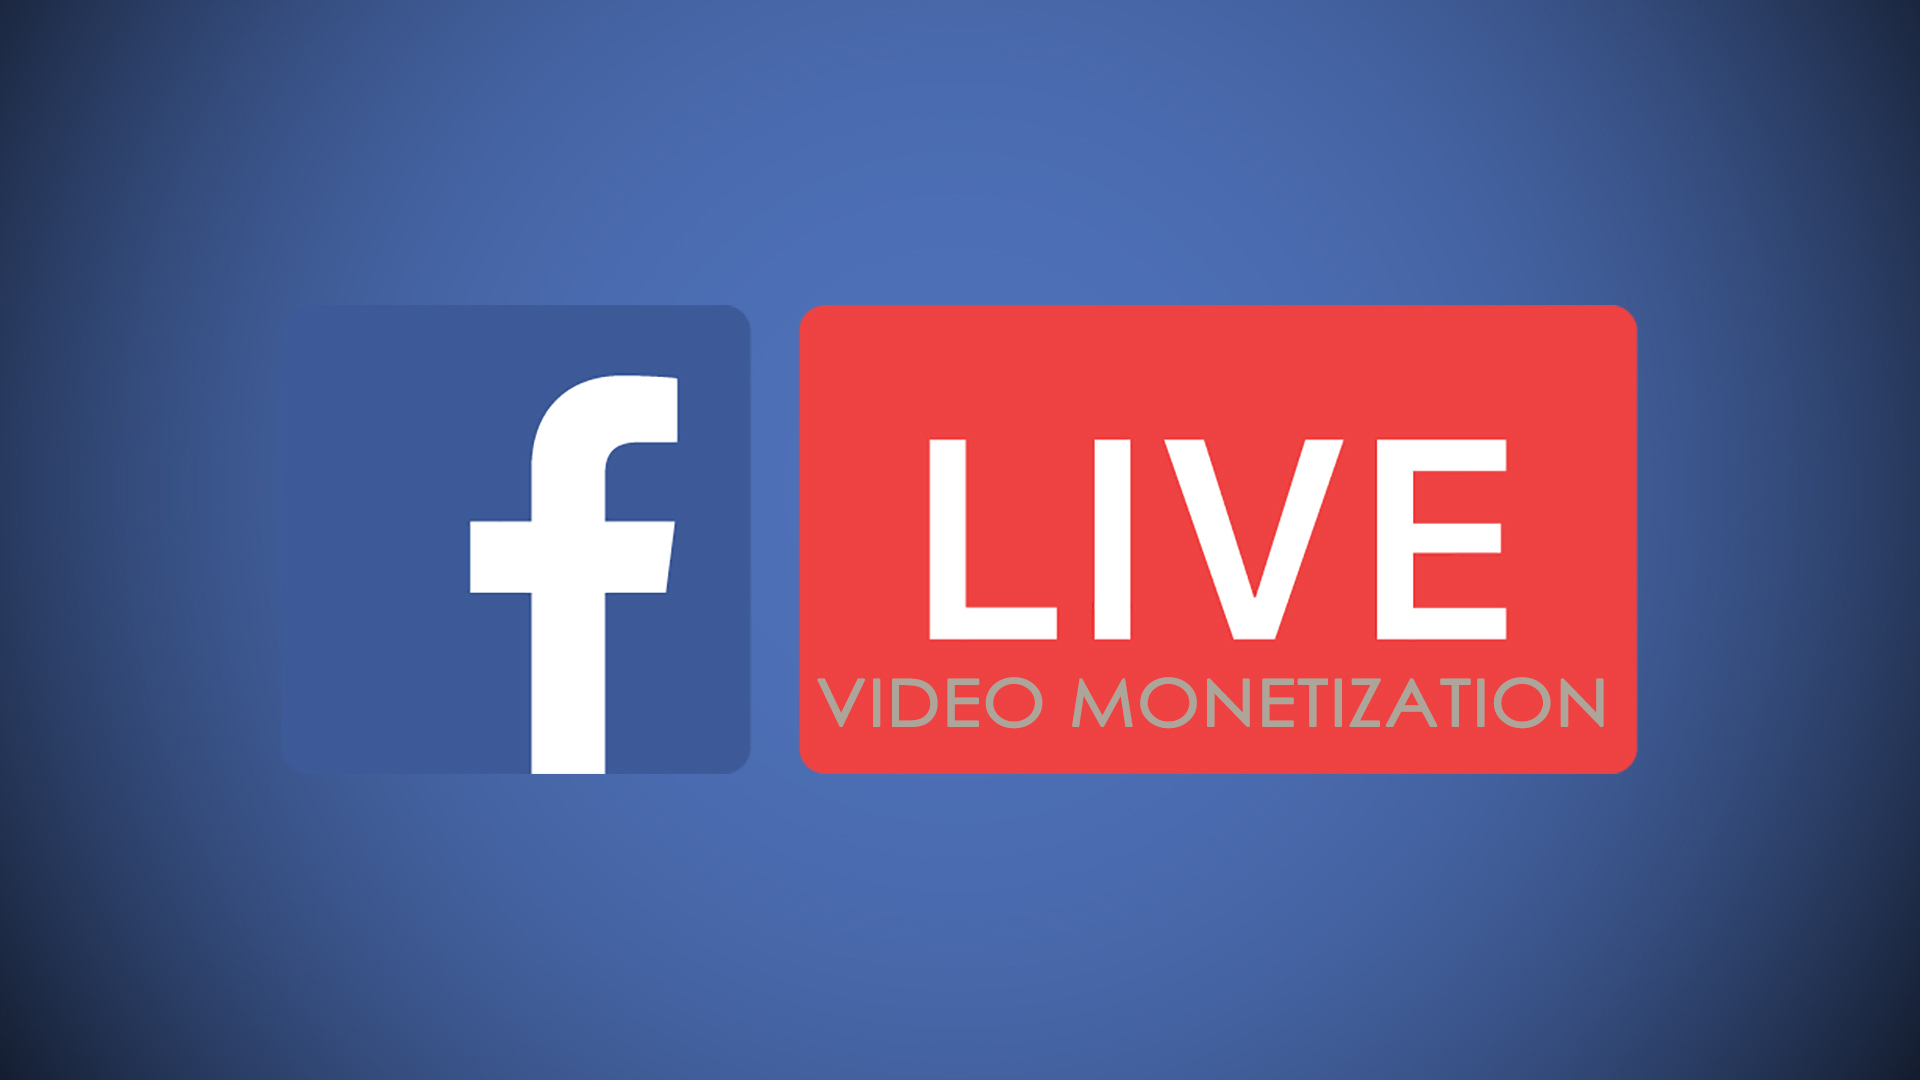 Facebook Video Monetization